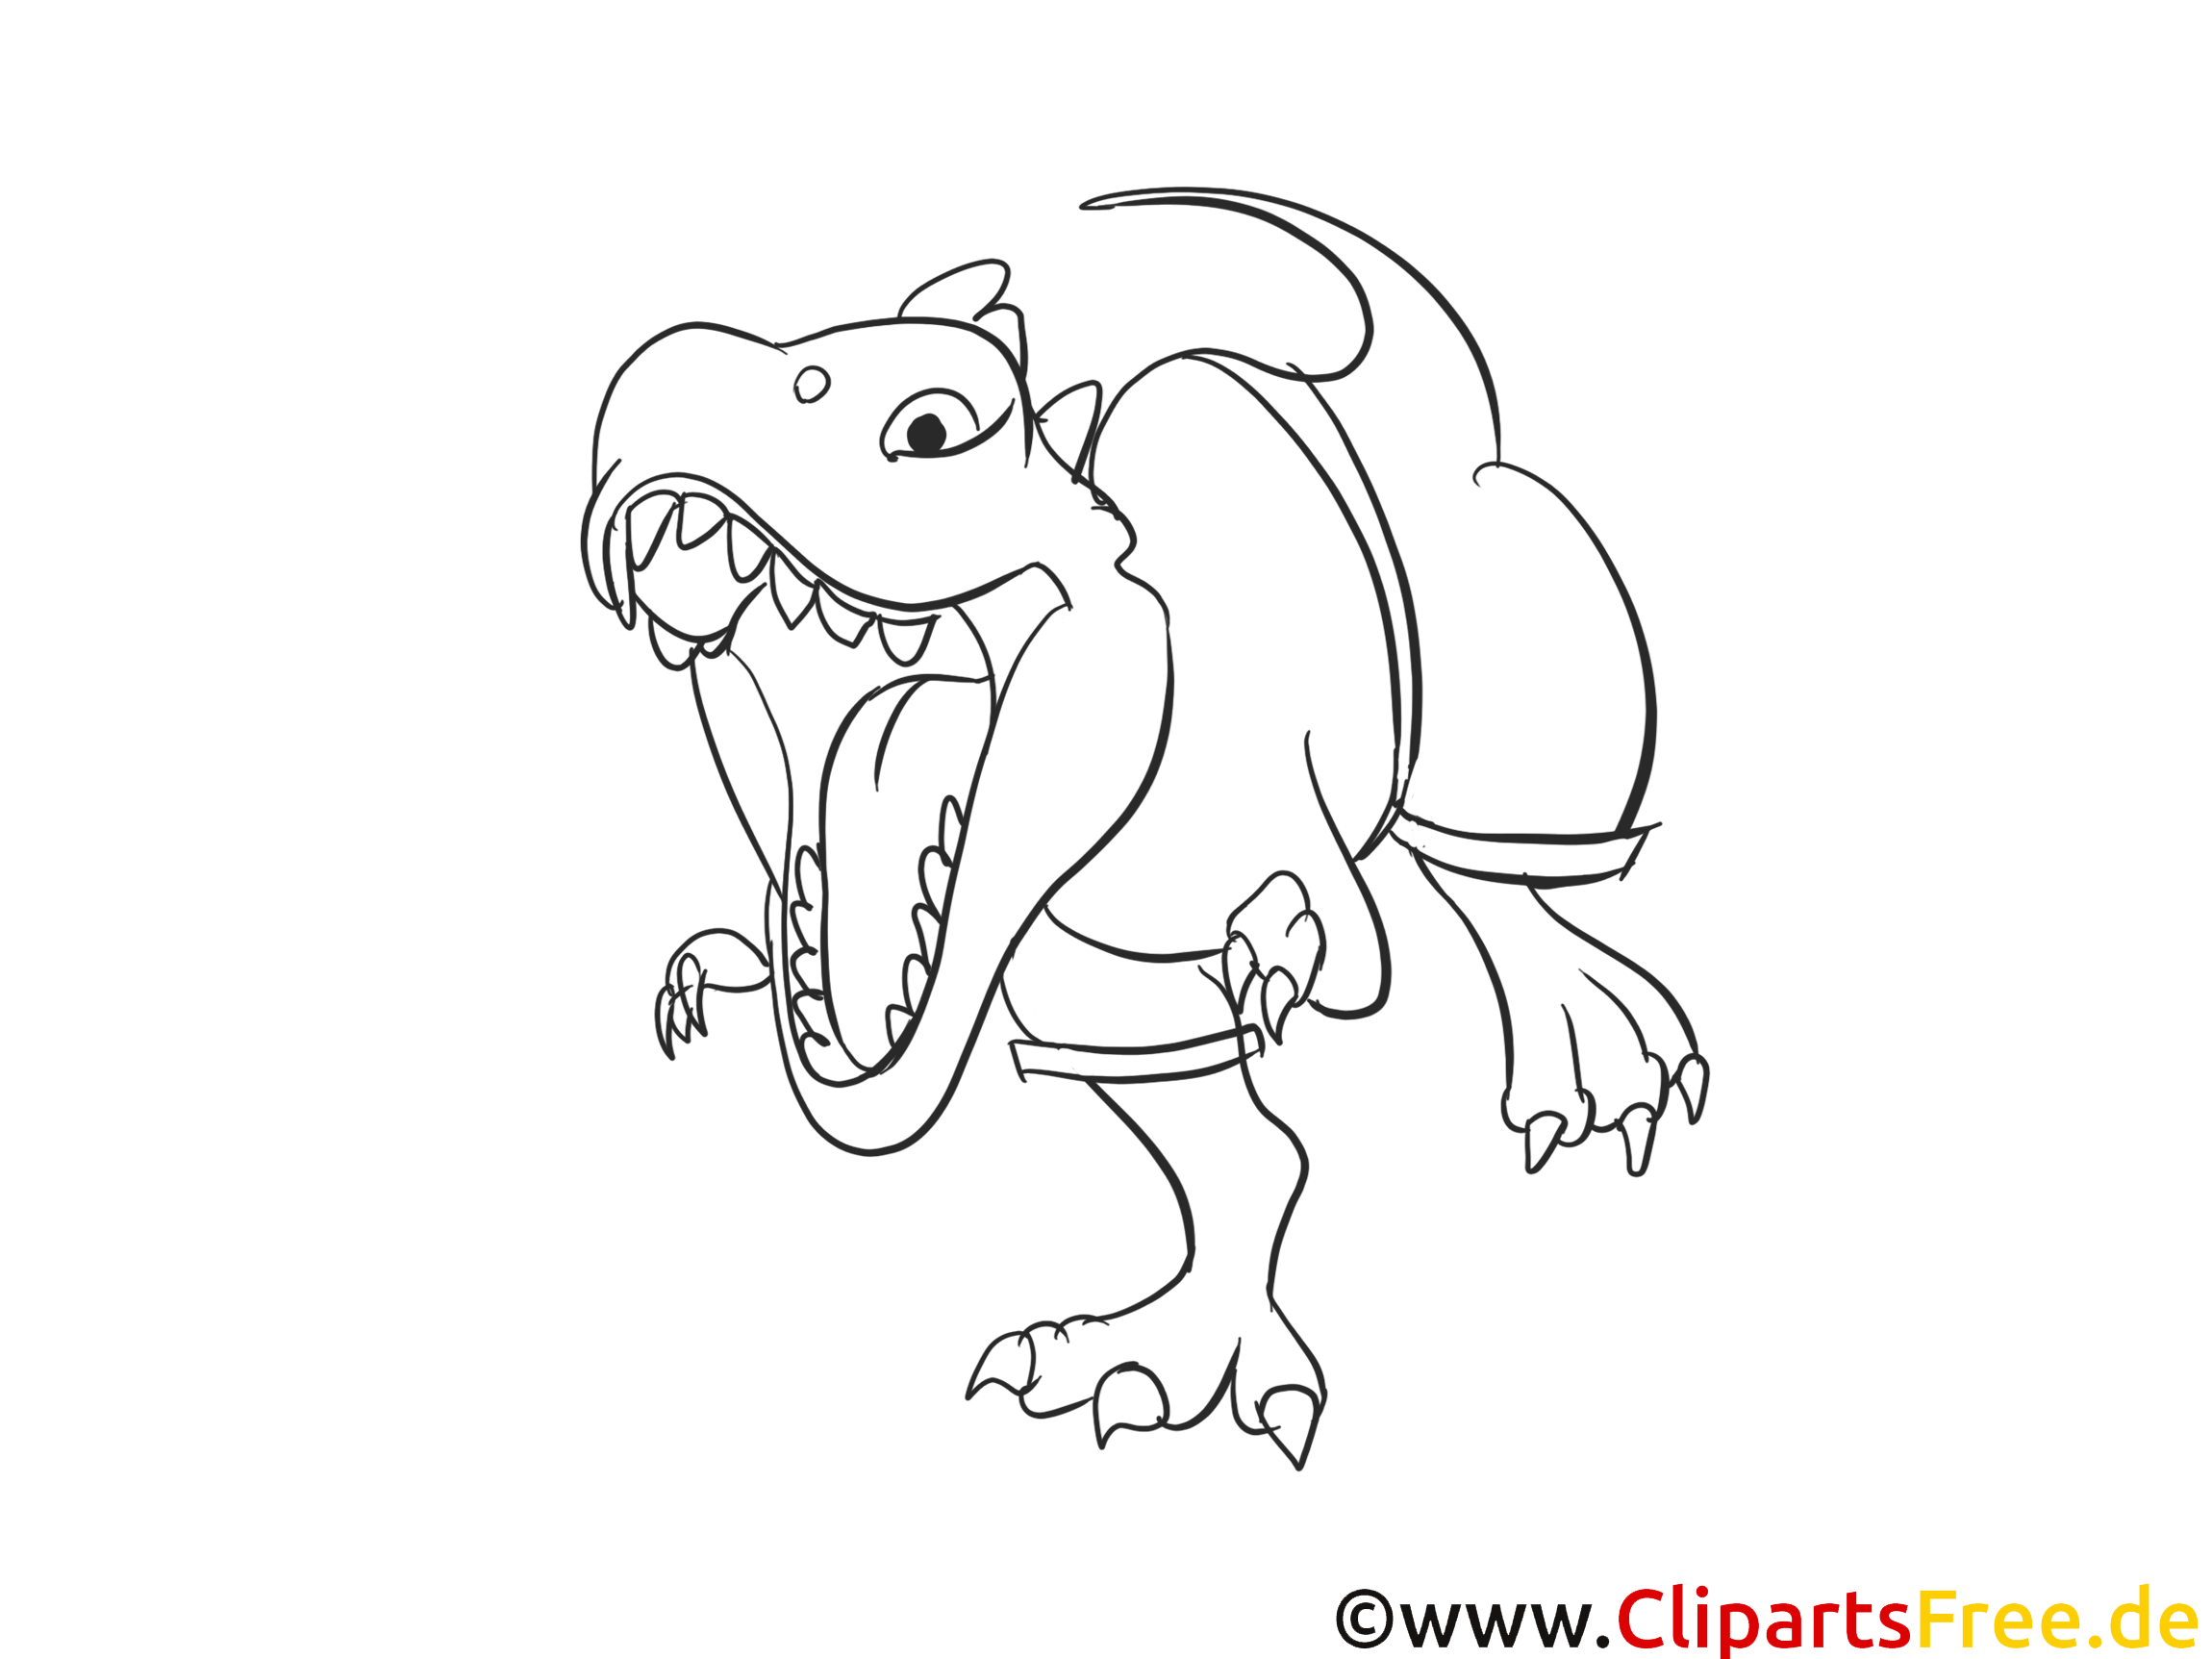 T-rex illustration – Dinosaures à imprimer